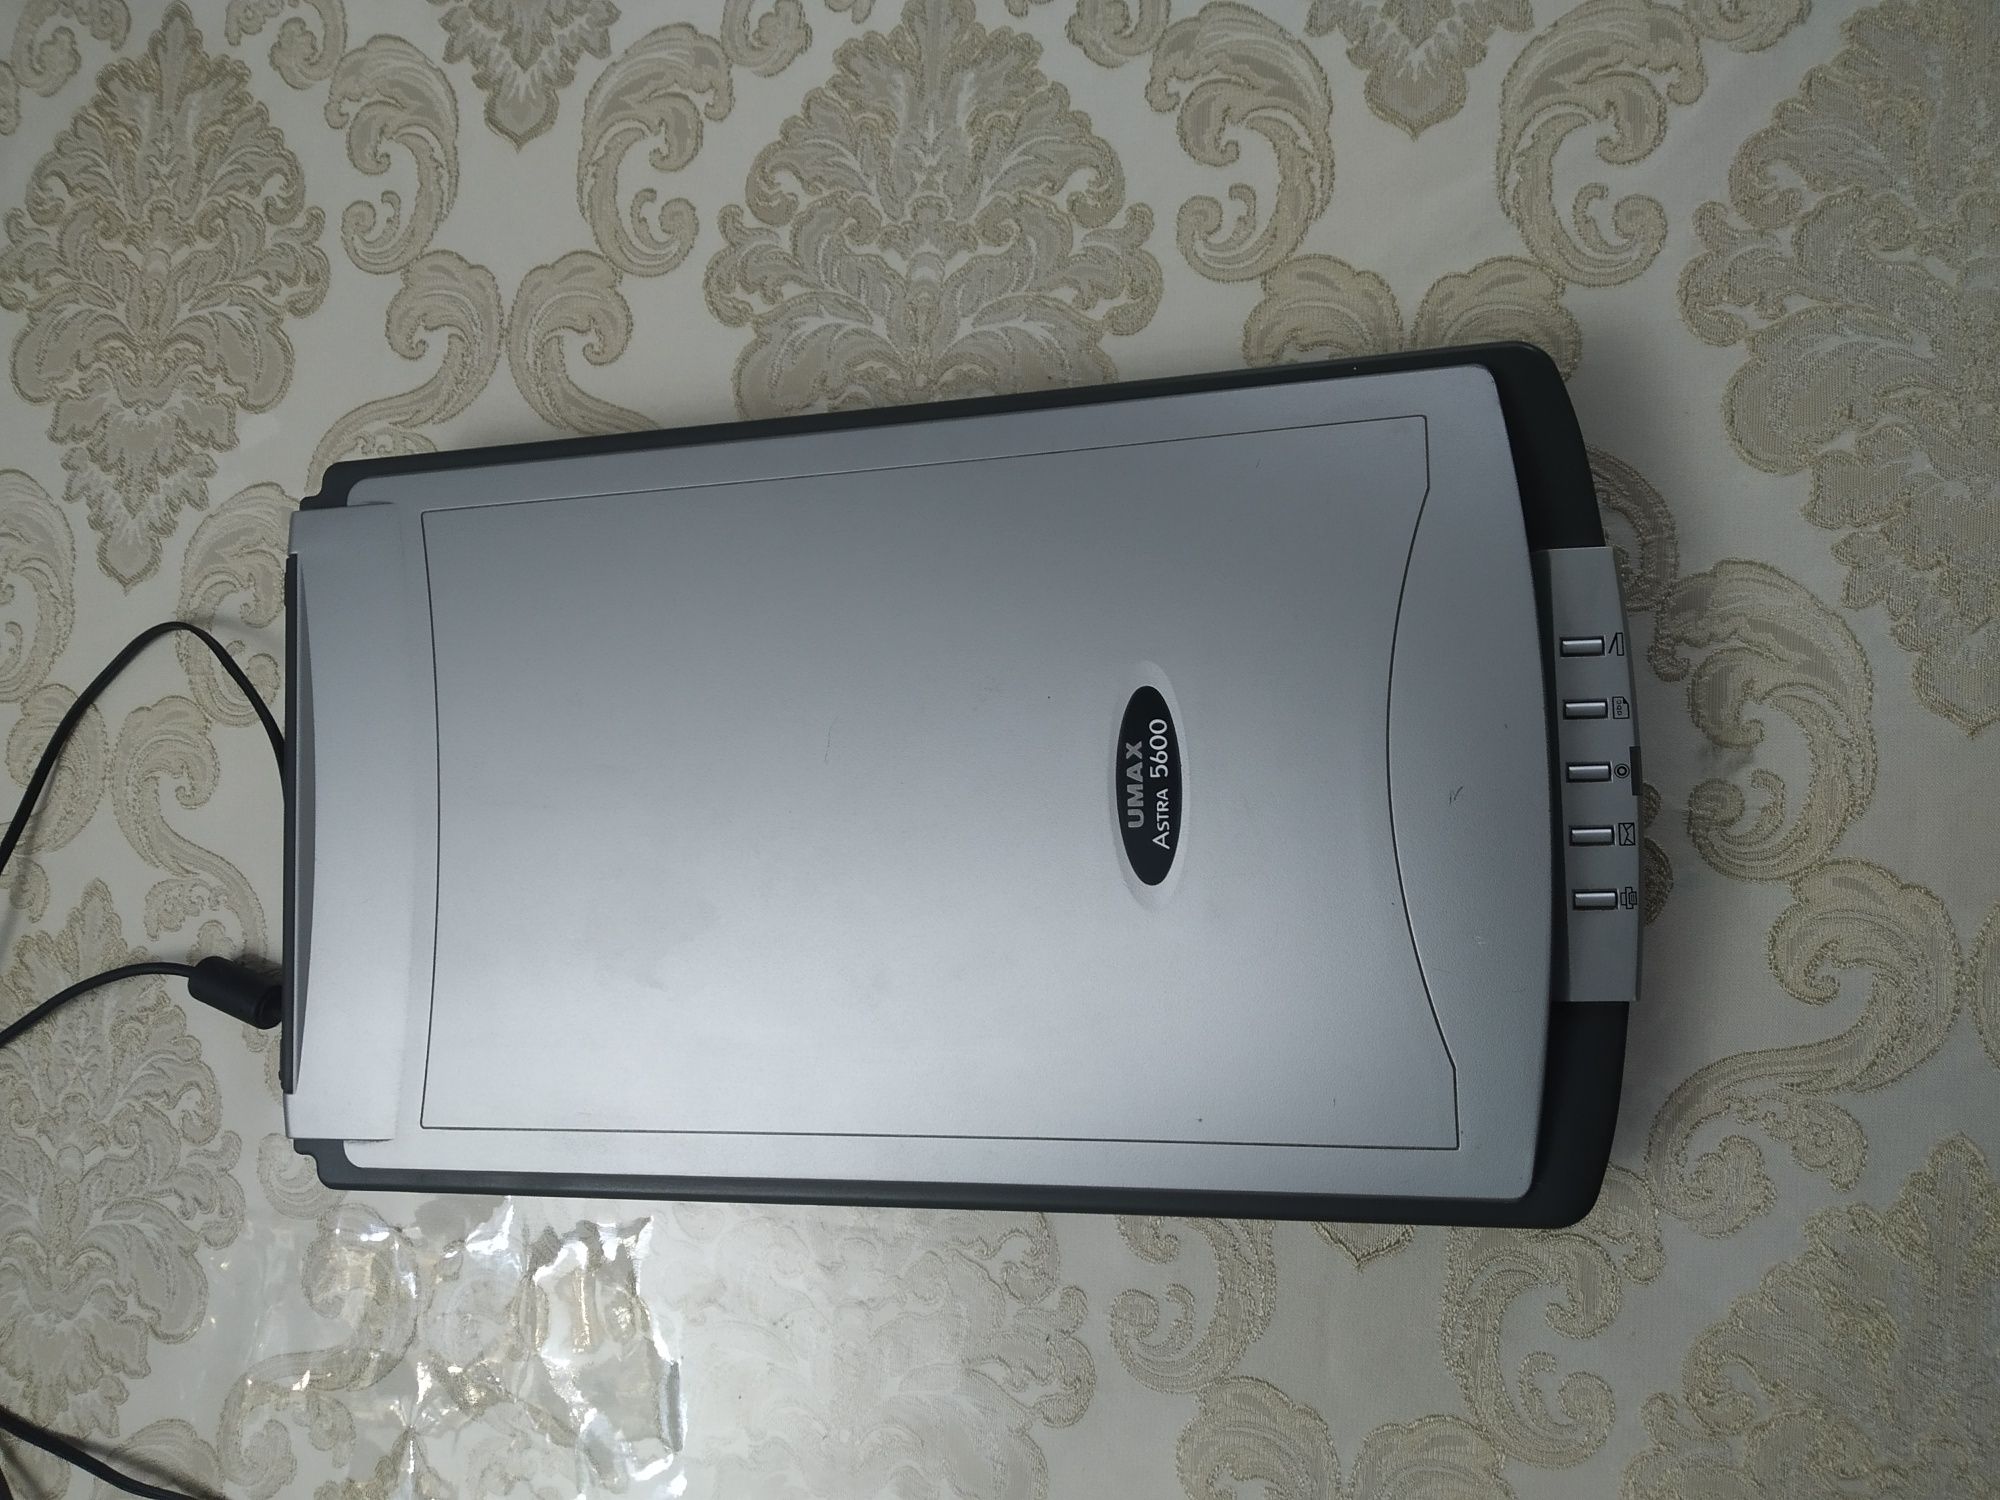 Продам сканер Umax Astra 5600